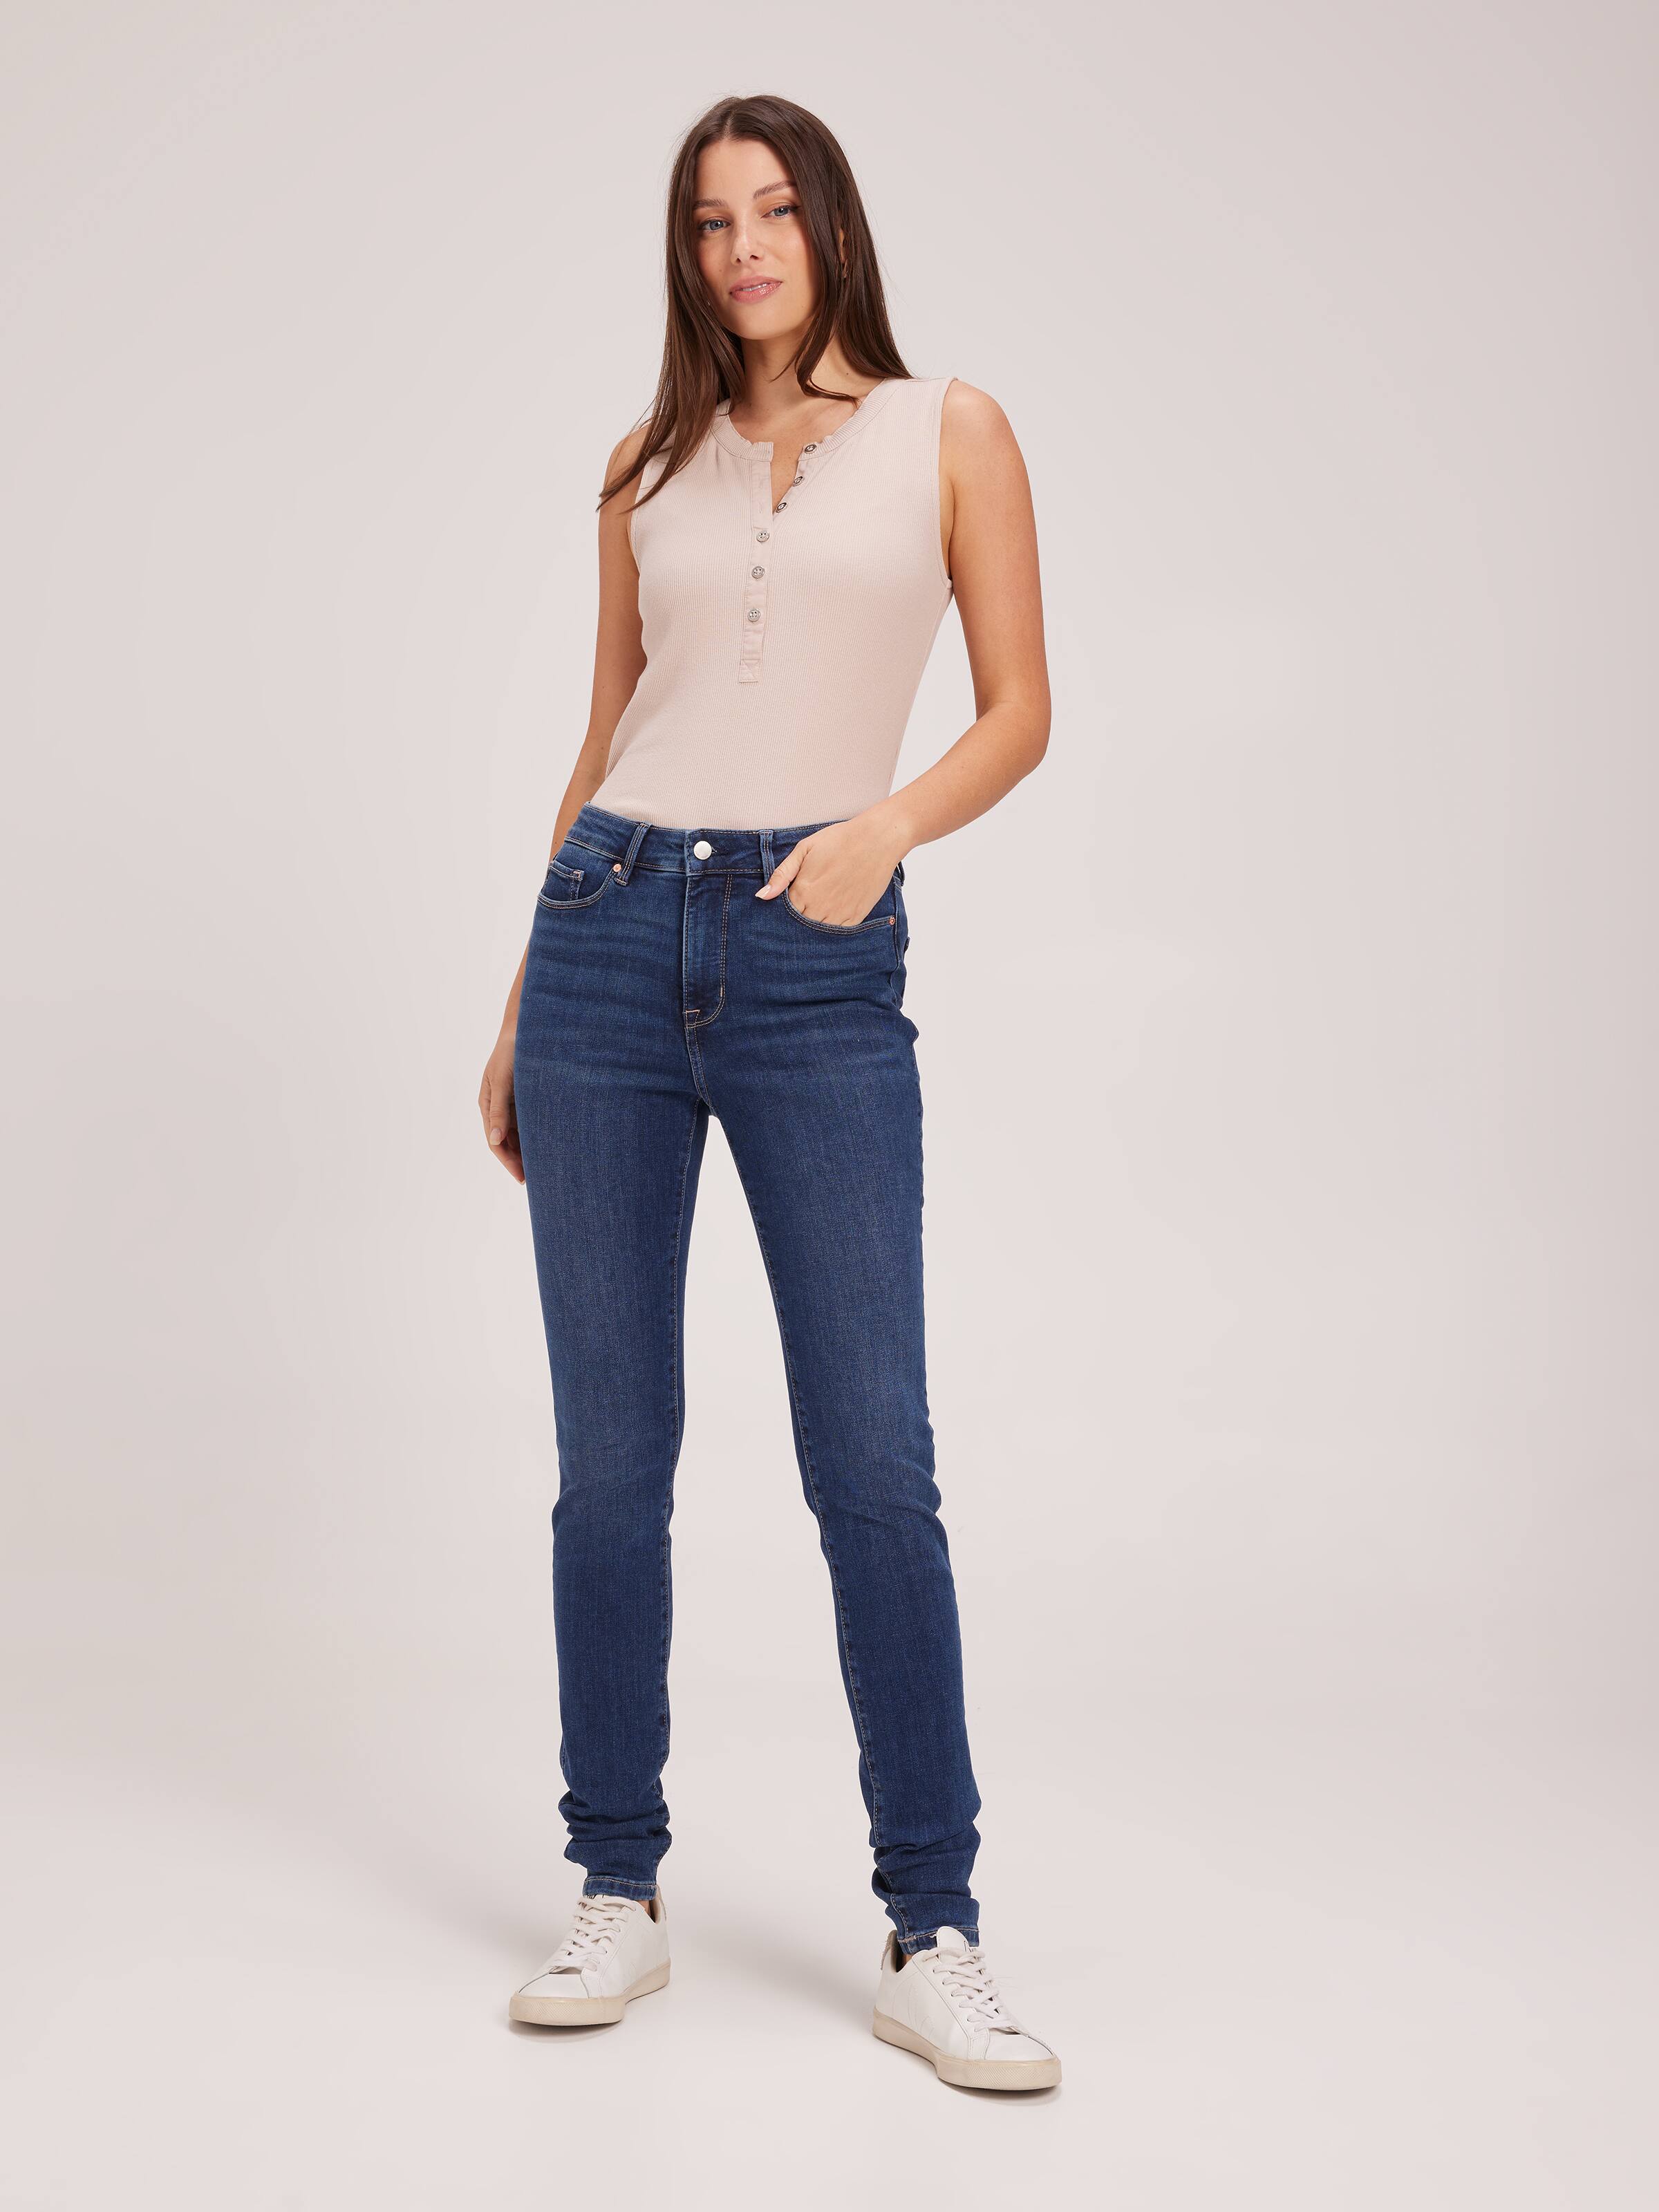 Women's Tall Skinny Jeans: Denim